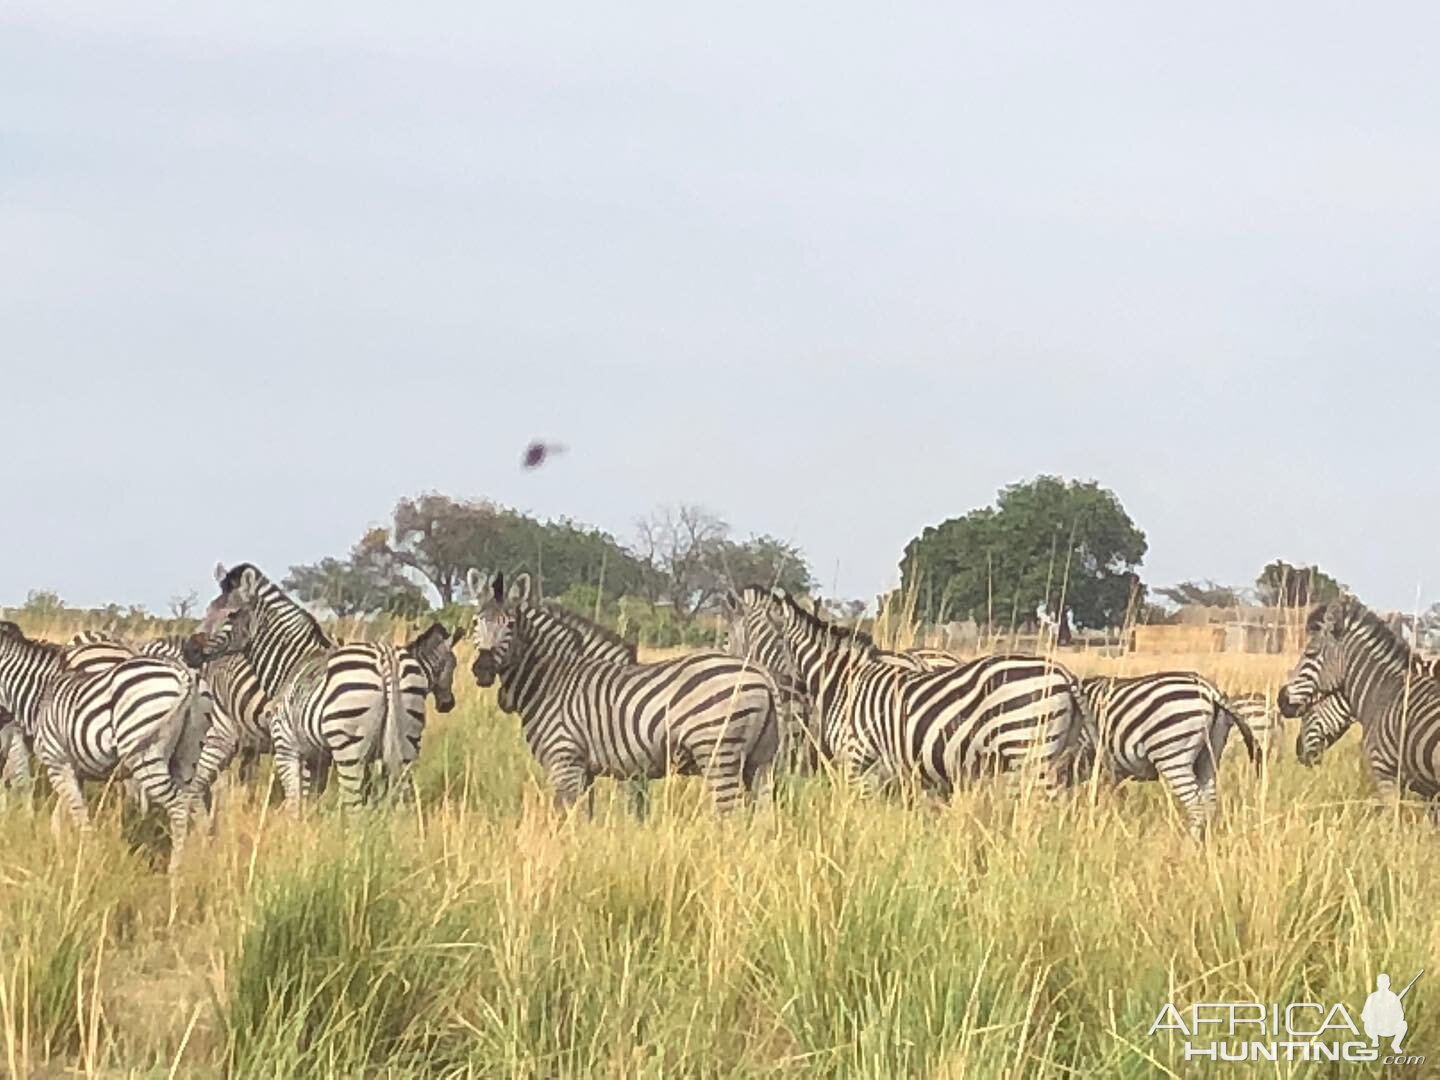 Plains Zebra in Tanzania